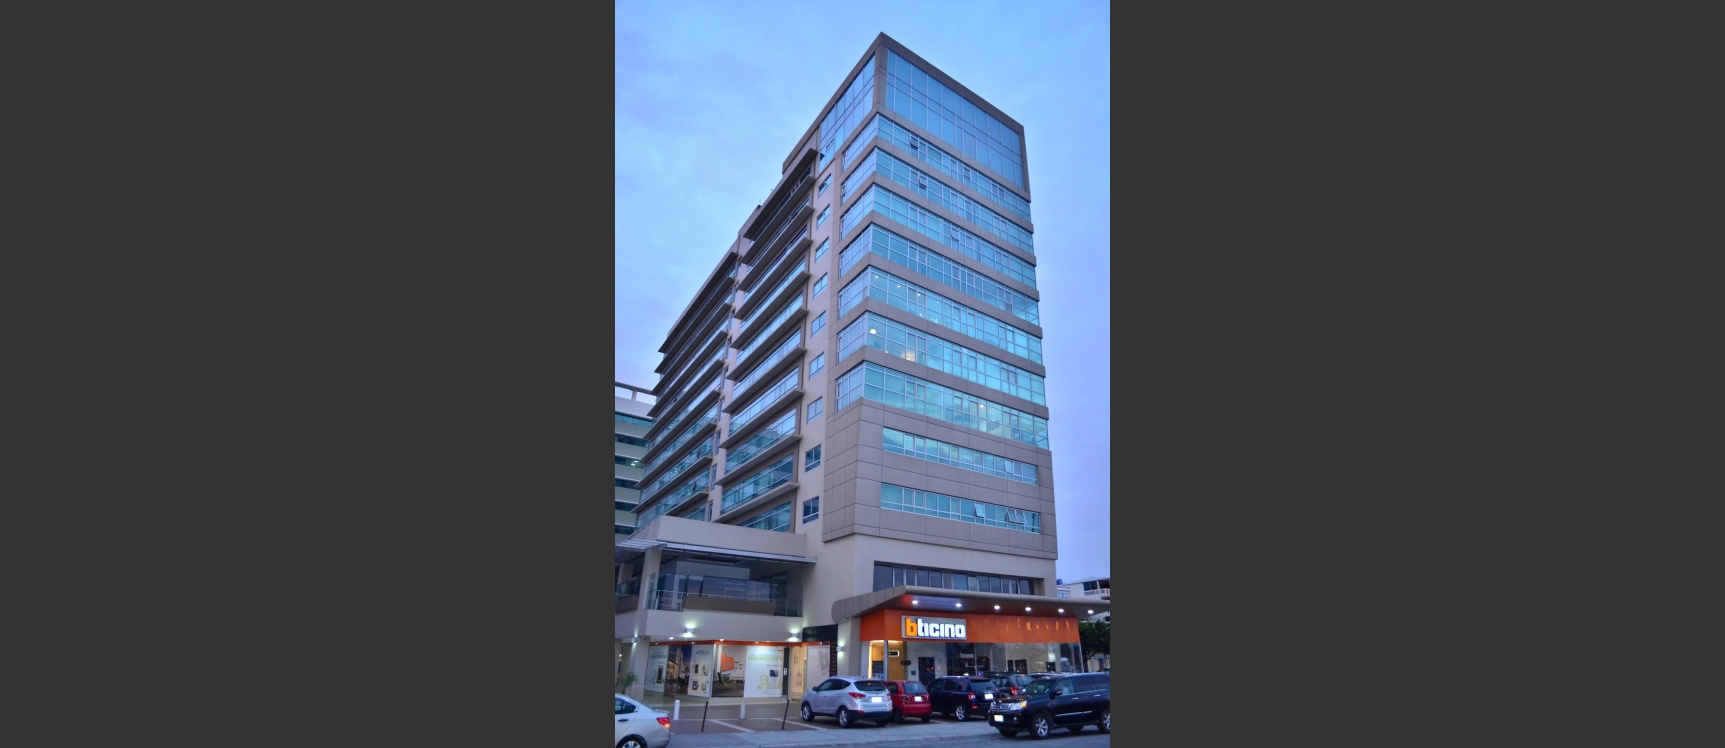 GeoBienes - Suite en alquiler en edificio Elite Building sector Mall del Sol - Plusvalia Guayaquil Casas de venta y alquiler Inmobiliaria Ecuador